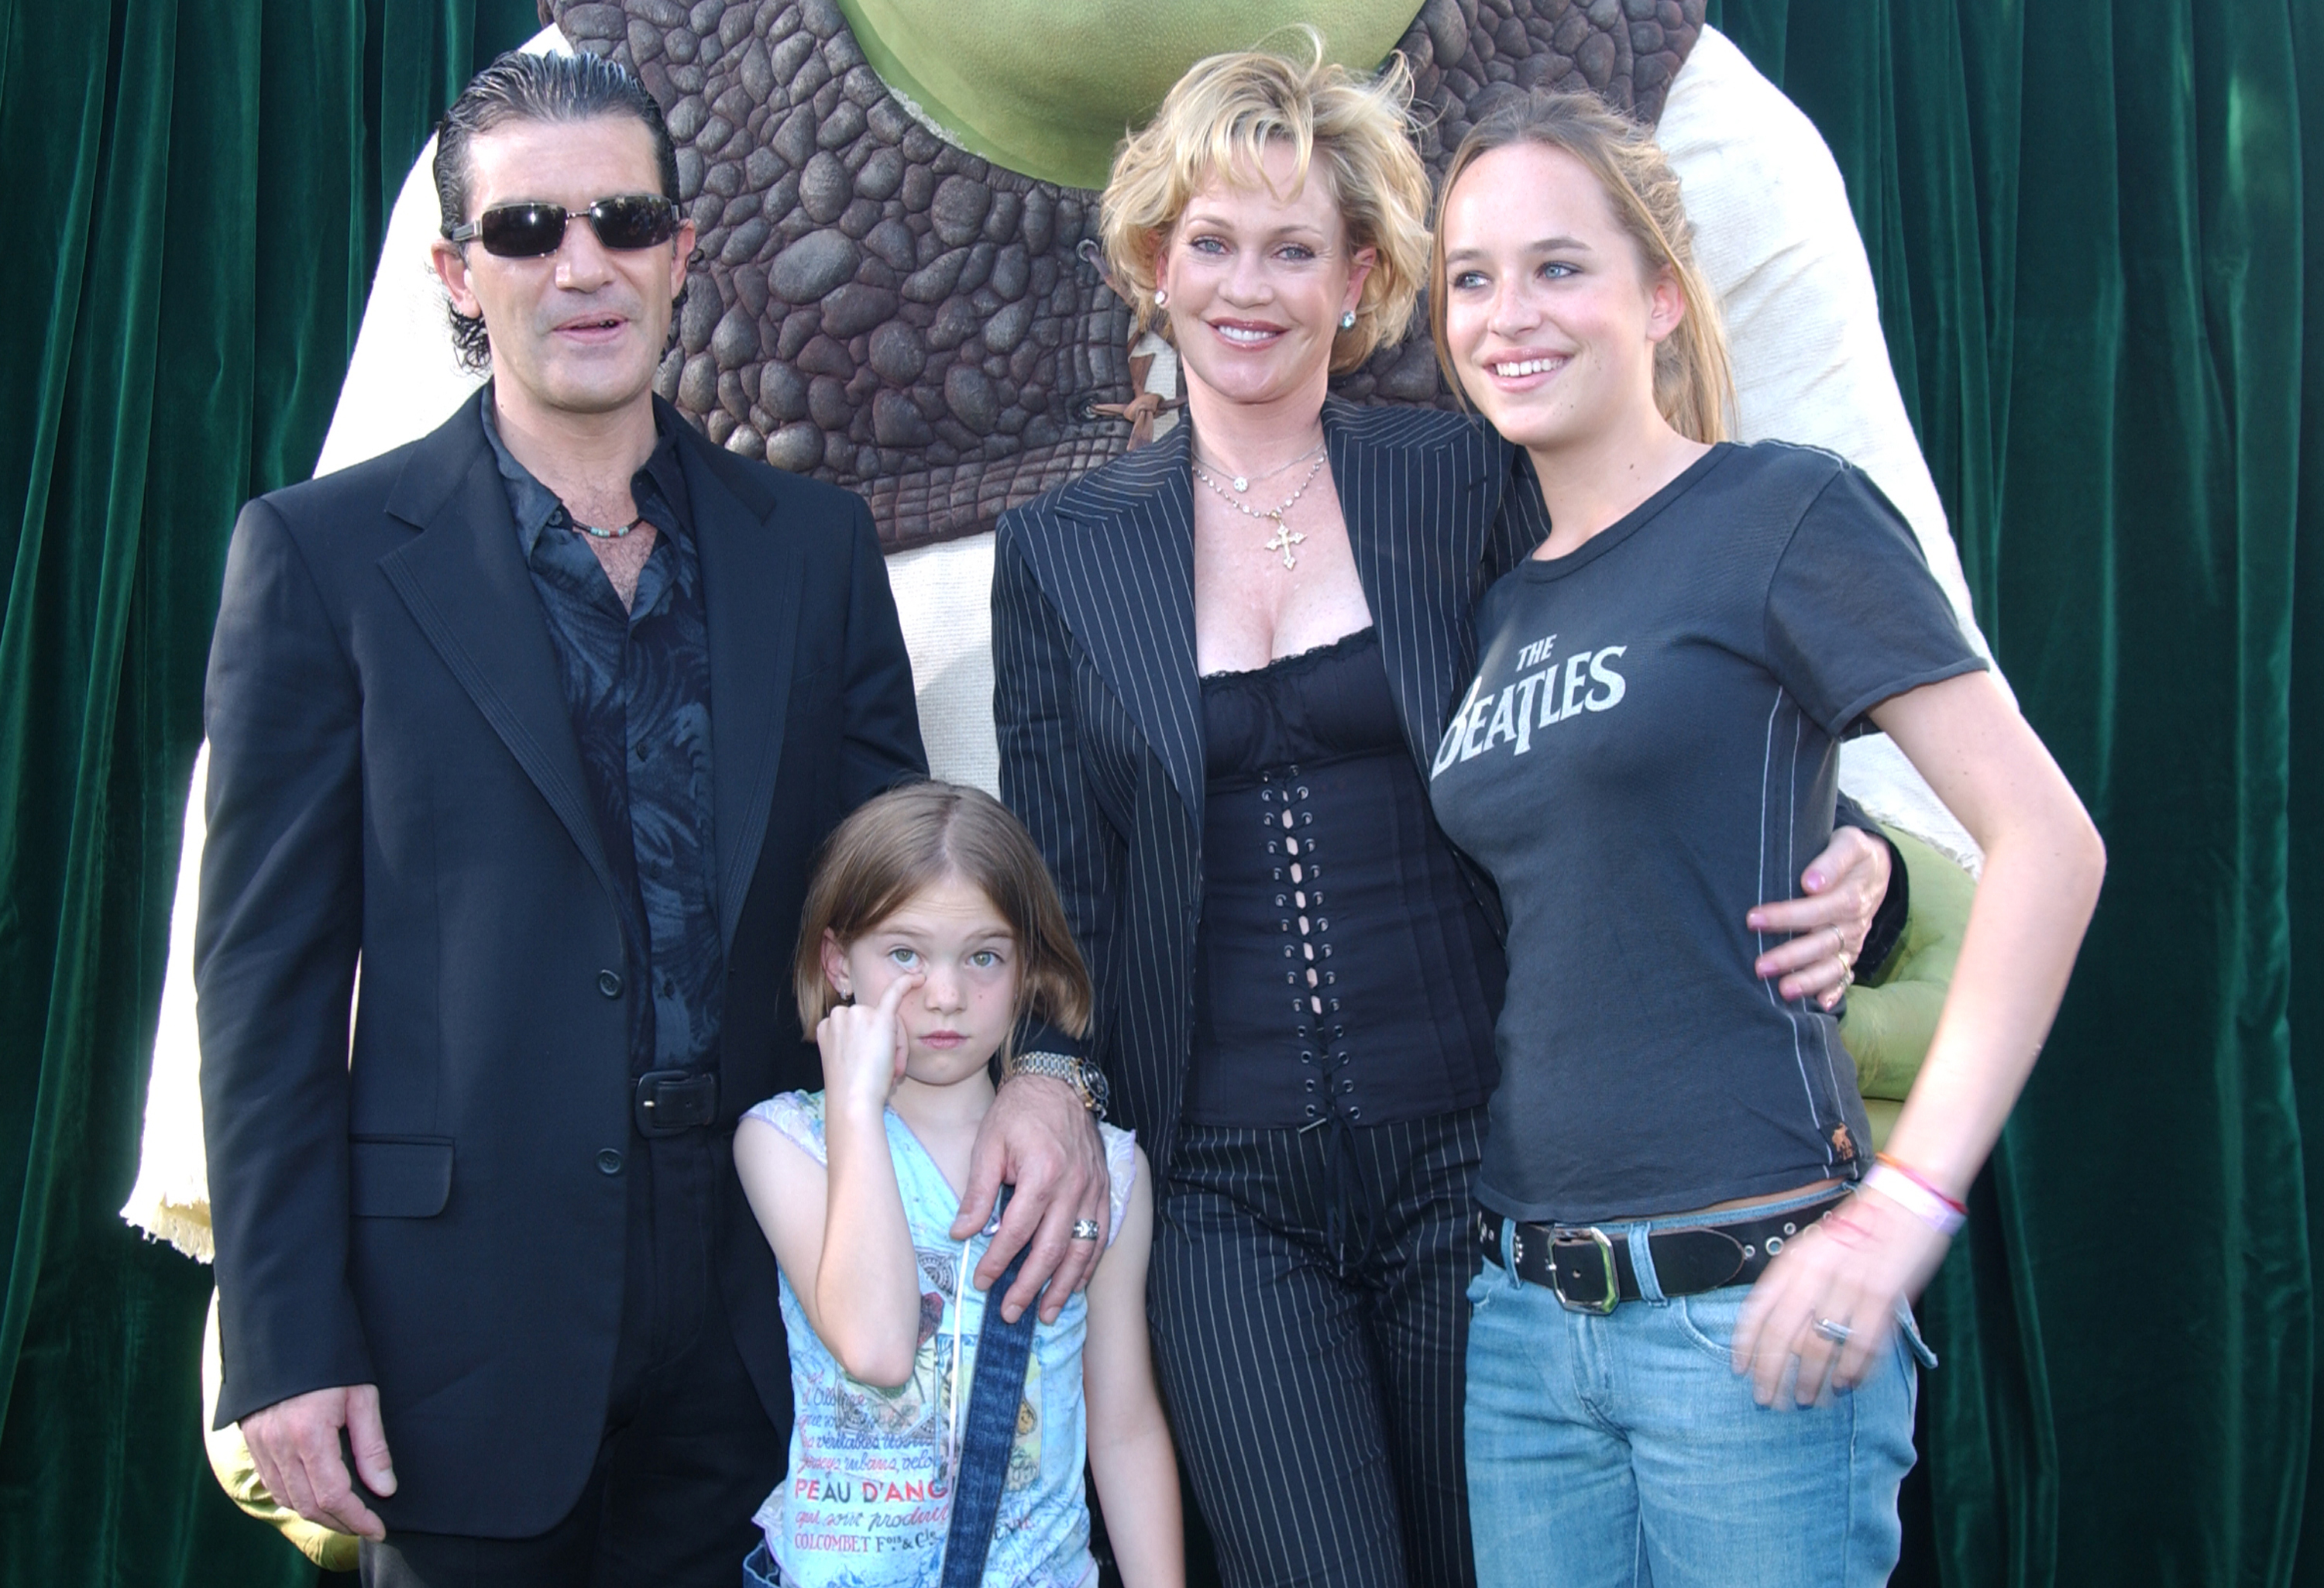 Antonio Banderas, Melanie Griffith, Stella Banderas und Dakota Johnson bei der Premiere von "Shrek 2" in Los Angeles am 8. Mai 2004. | Quelle: Getty Images